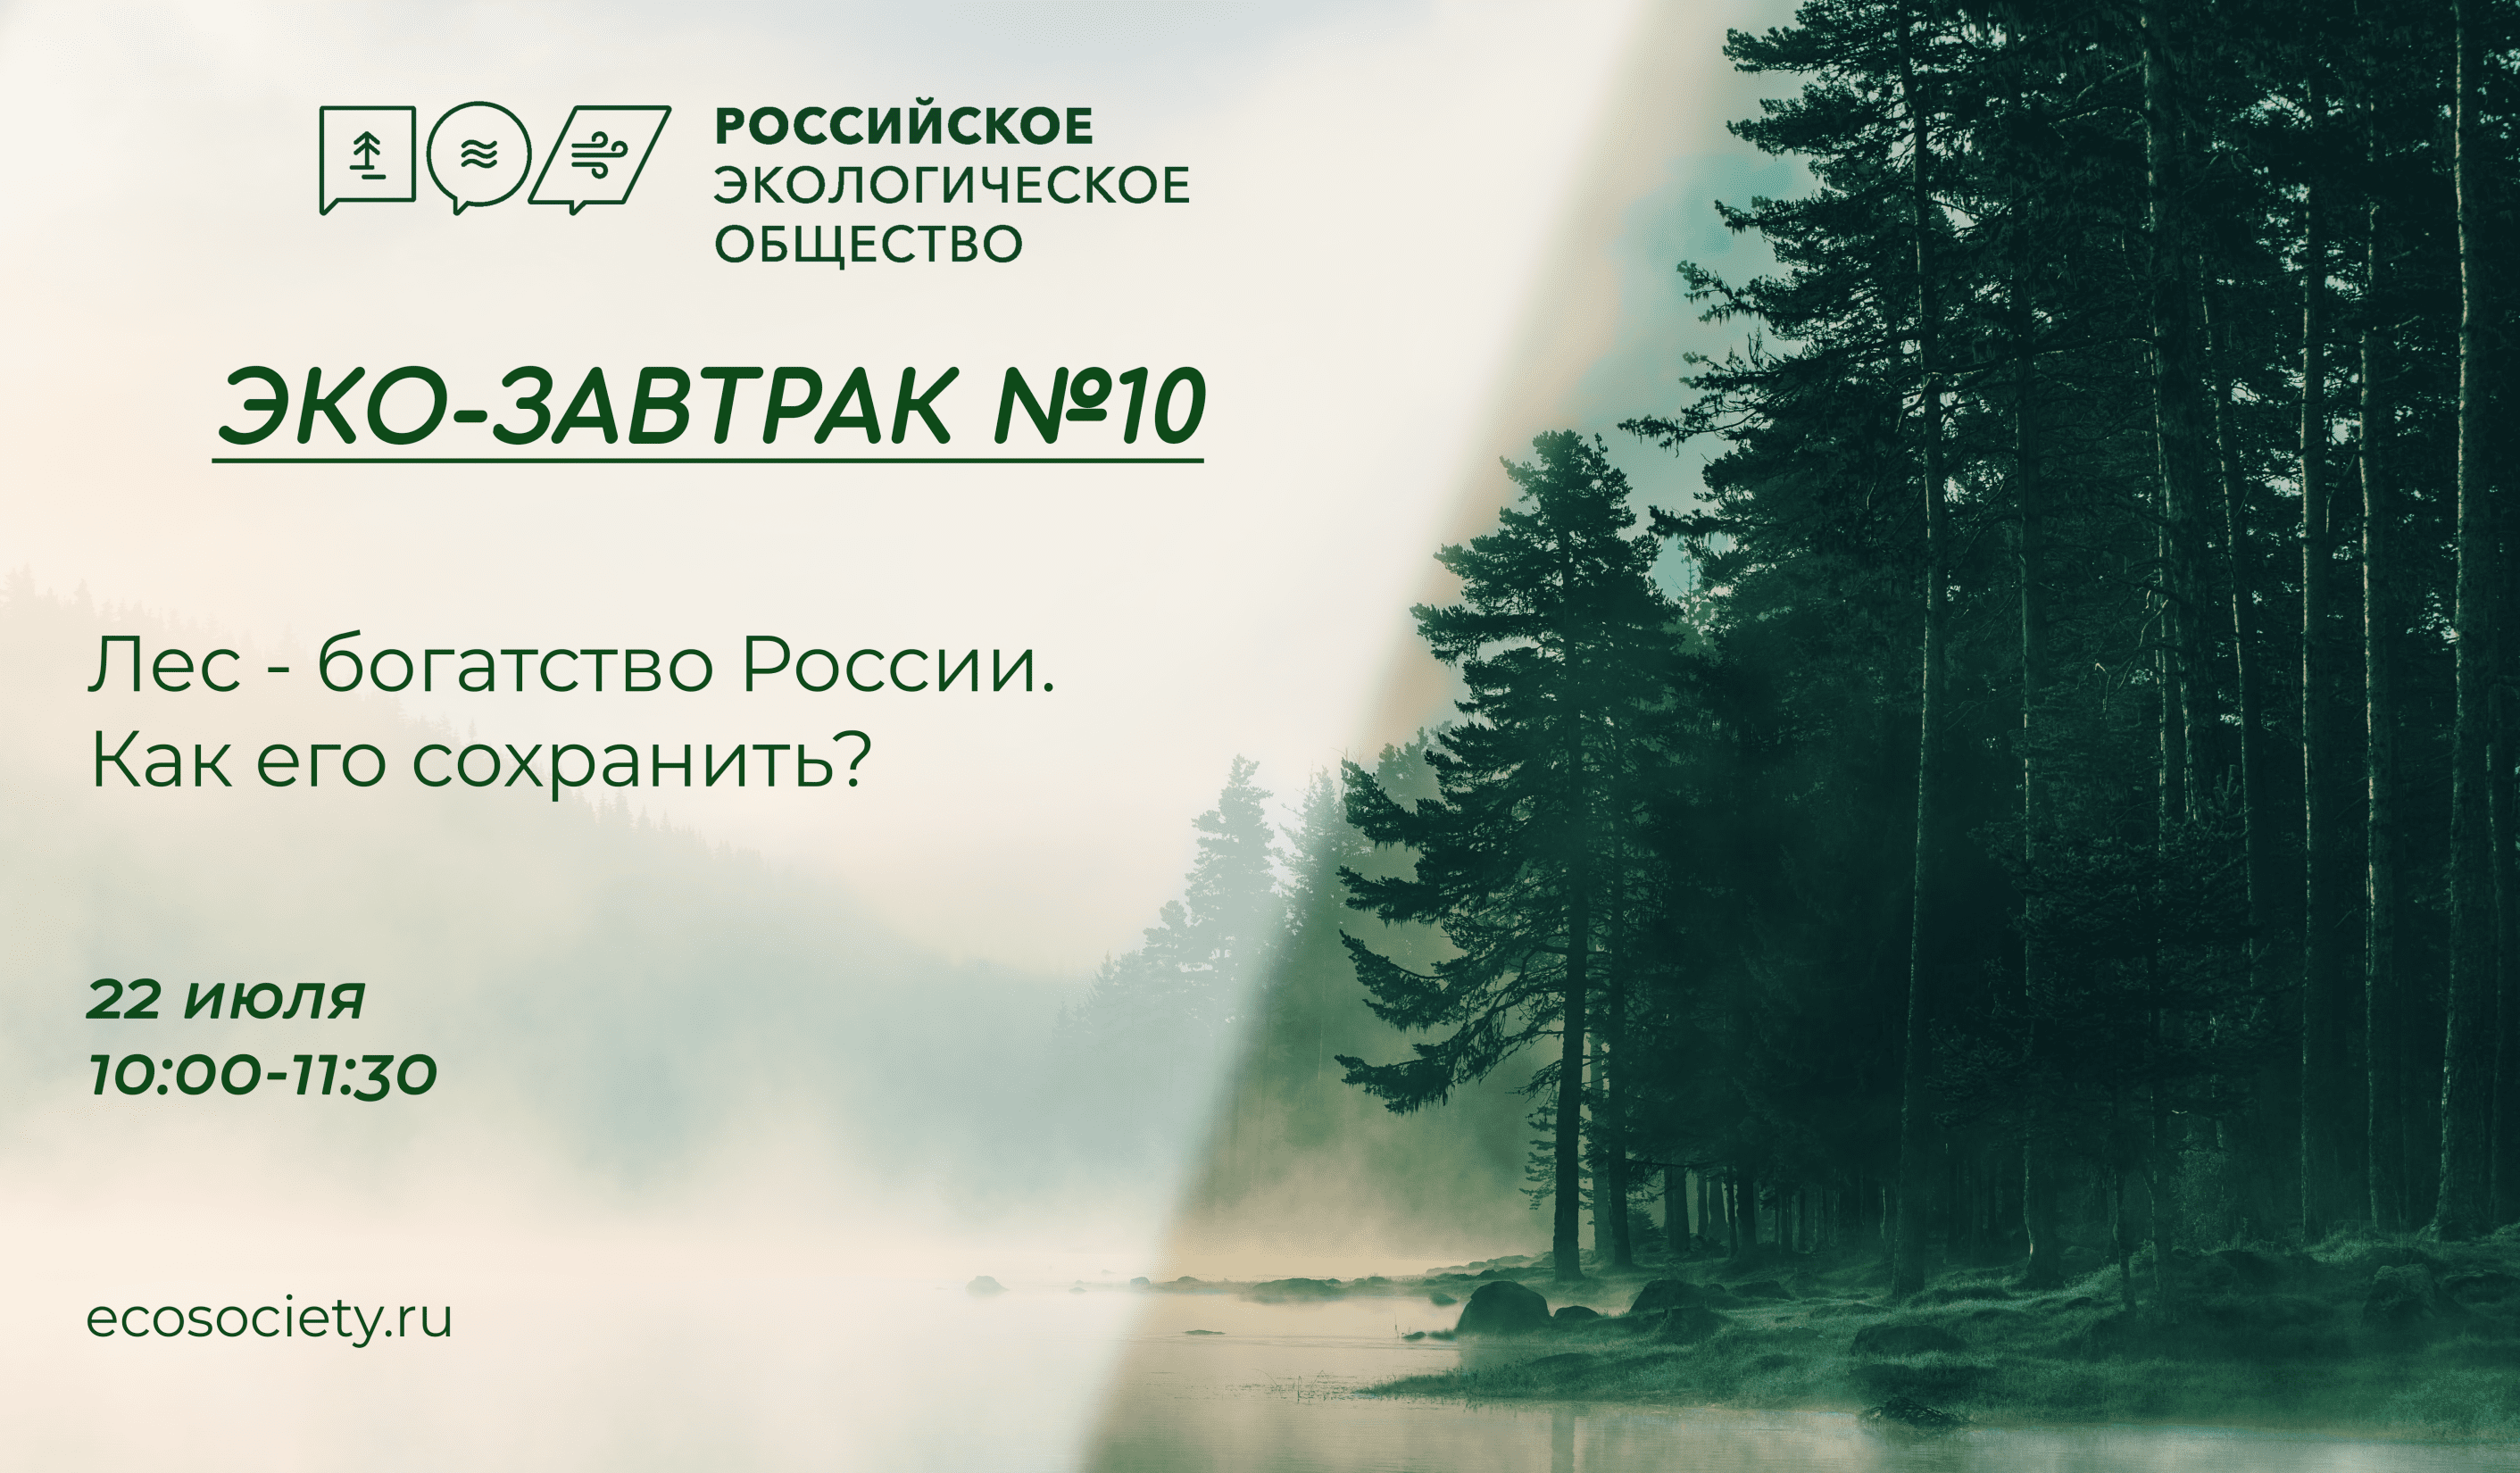 Эко-завтрак Российского экологического общества на тему: «Лес - богатство России. Как его сохранить?»